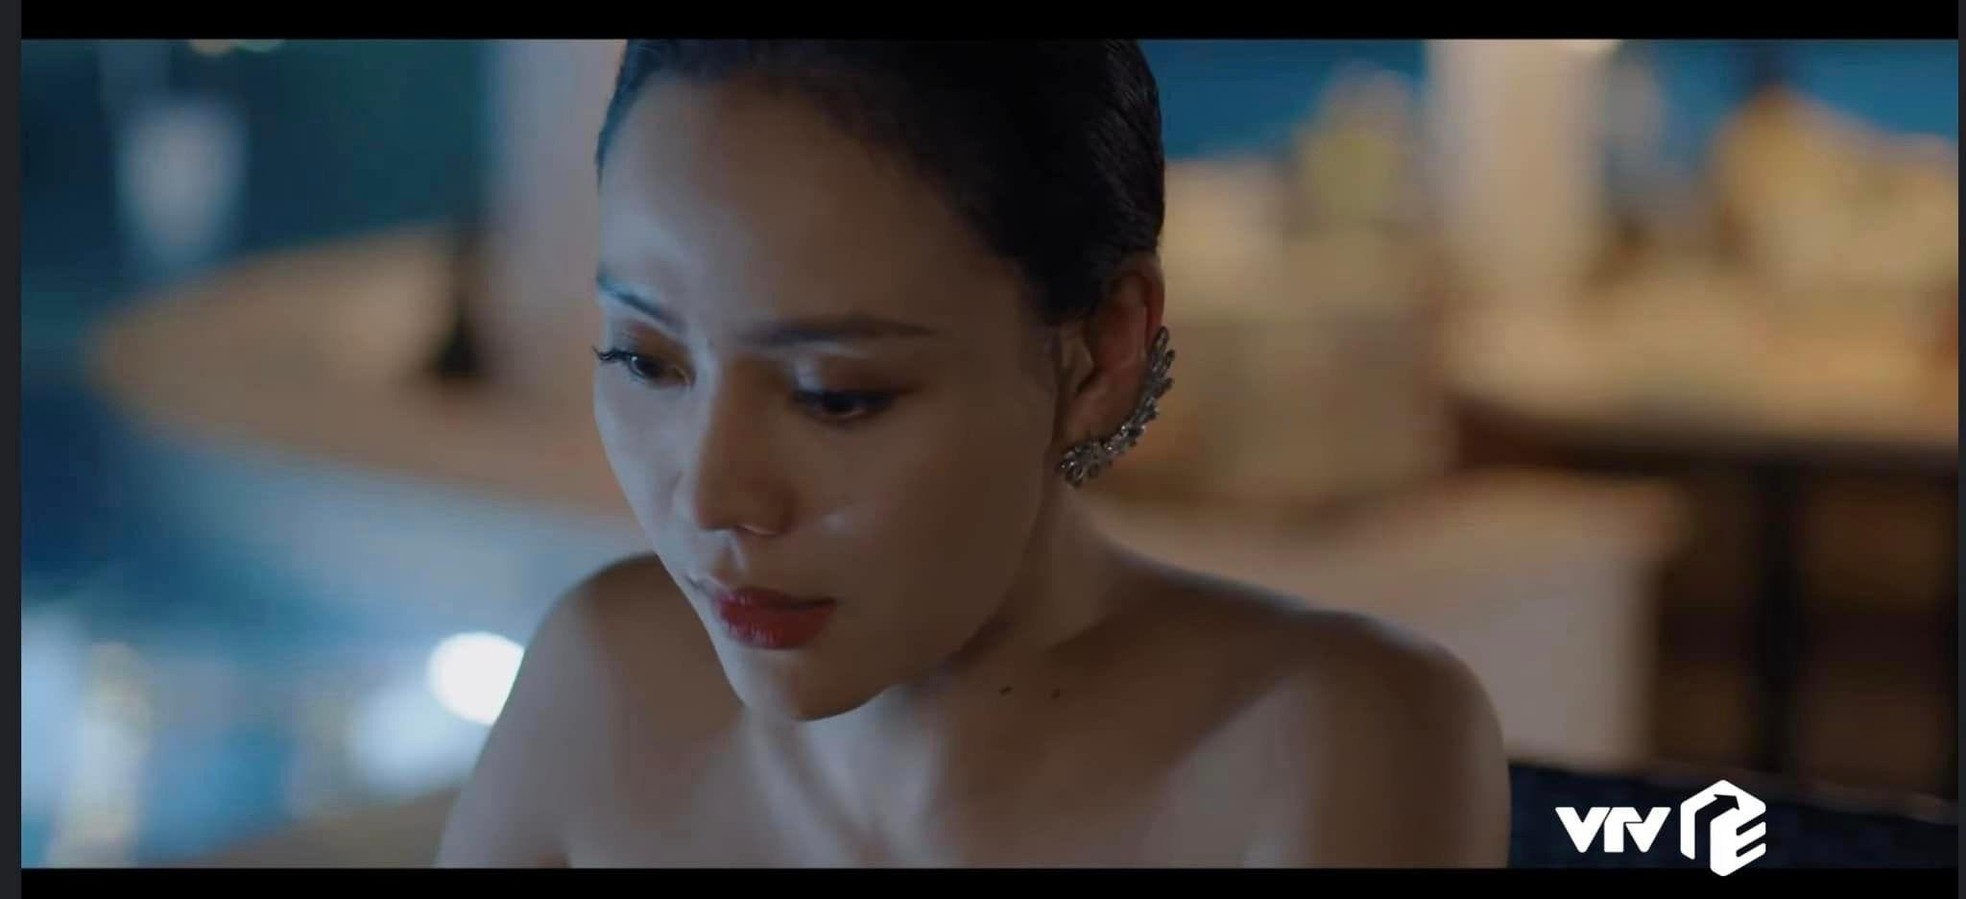 Nữ diễn viên đóng cảnh nóng với Việt Anh trong Hành trình công lý - Ảnh 2.